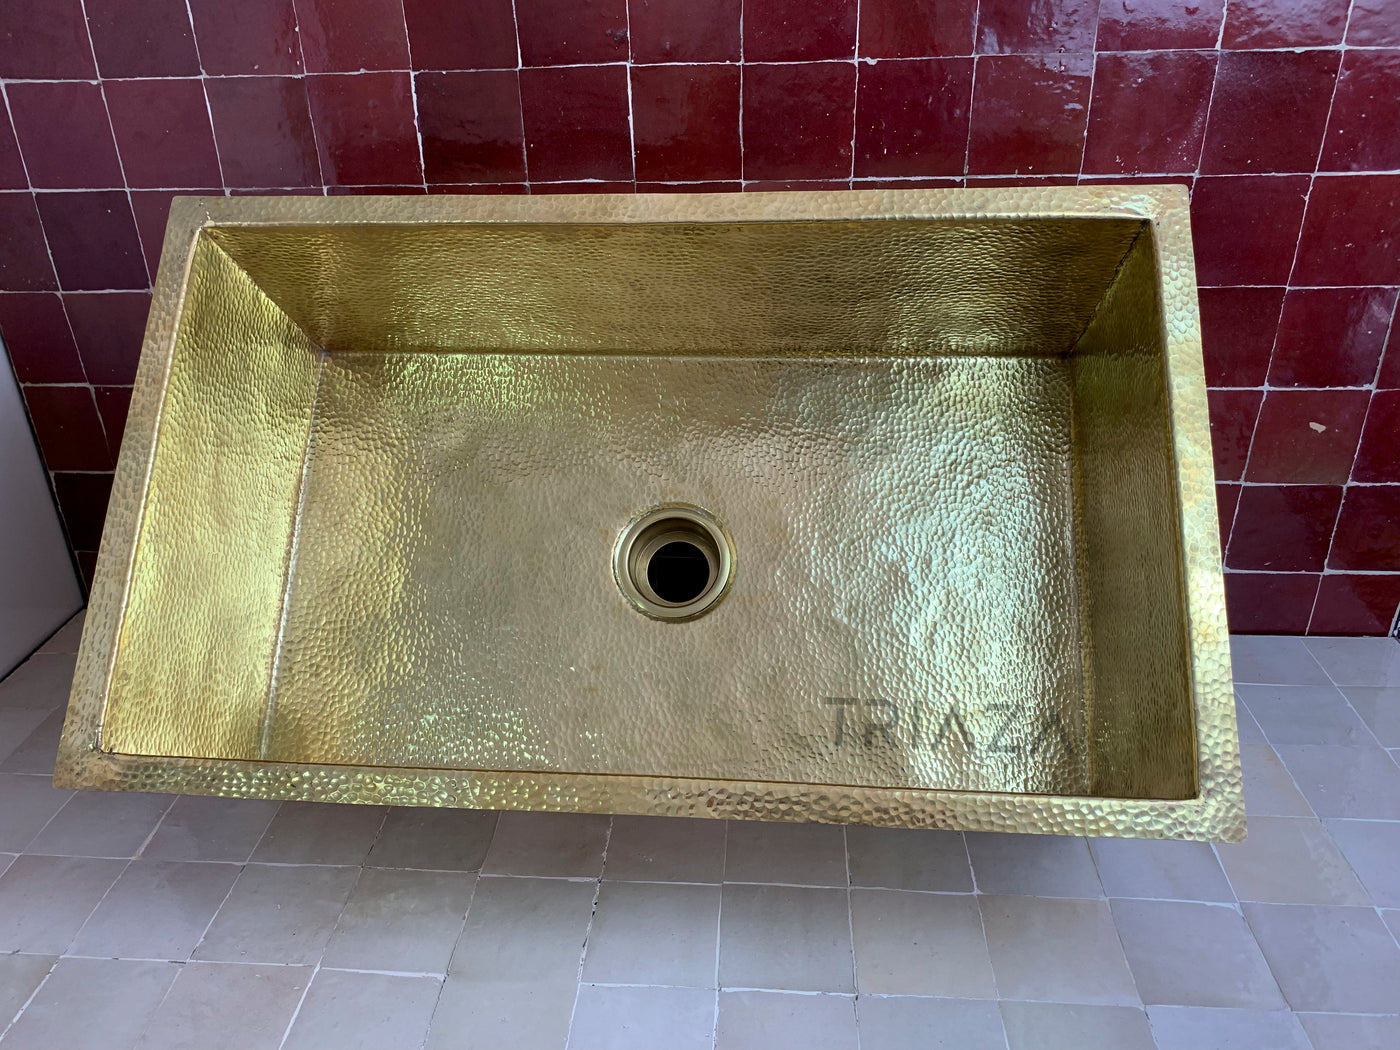 Handcrafted Unlacquered Brass Kitchen Sink - Undermount Brass Sink - Hammered Bar Sink - Triazadesigns